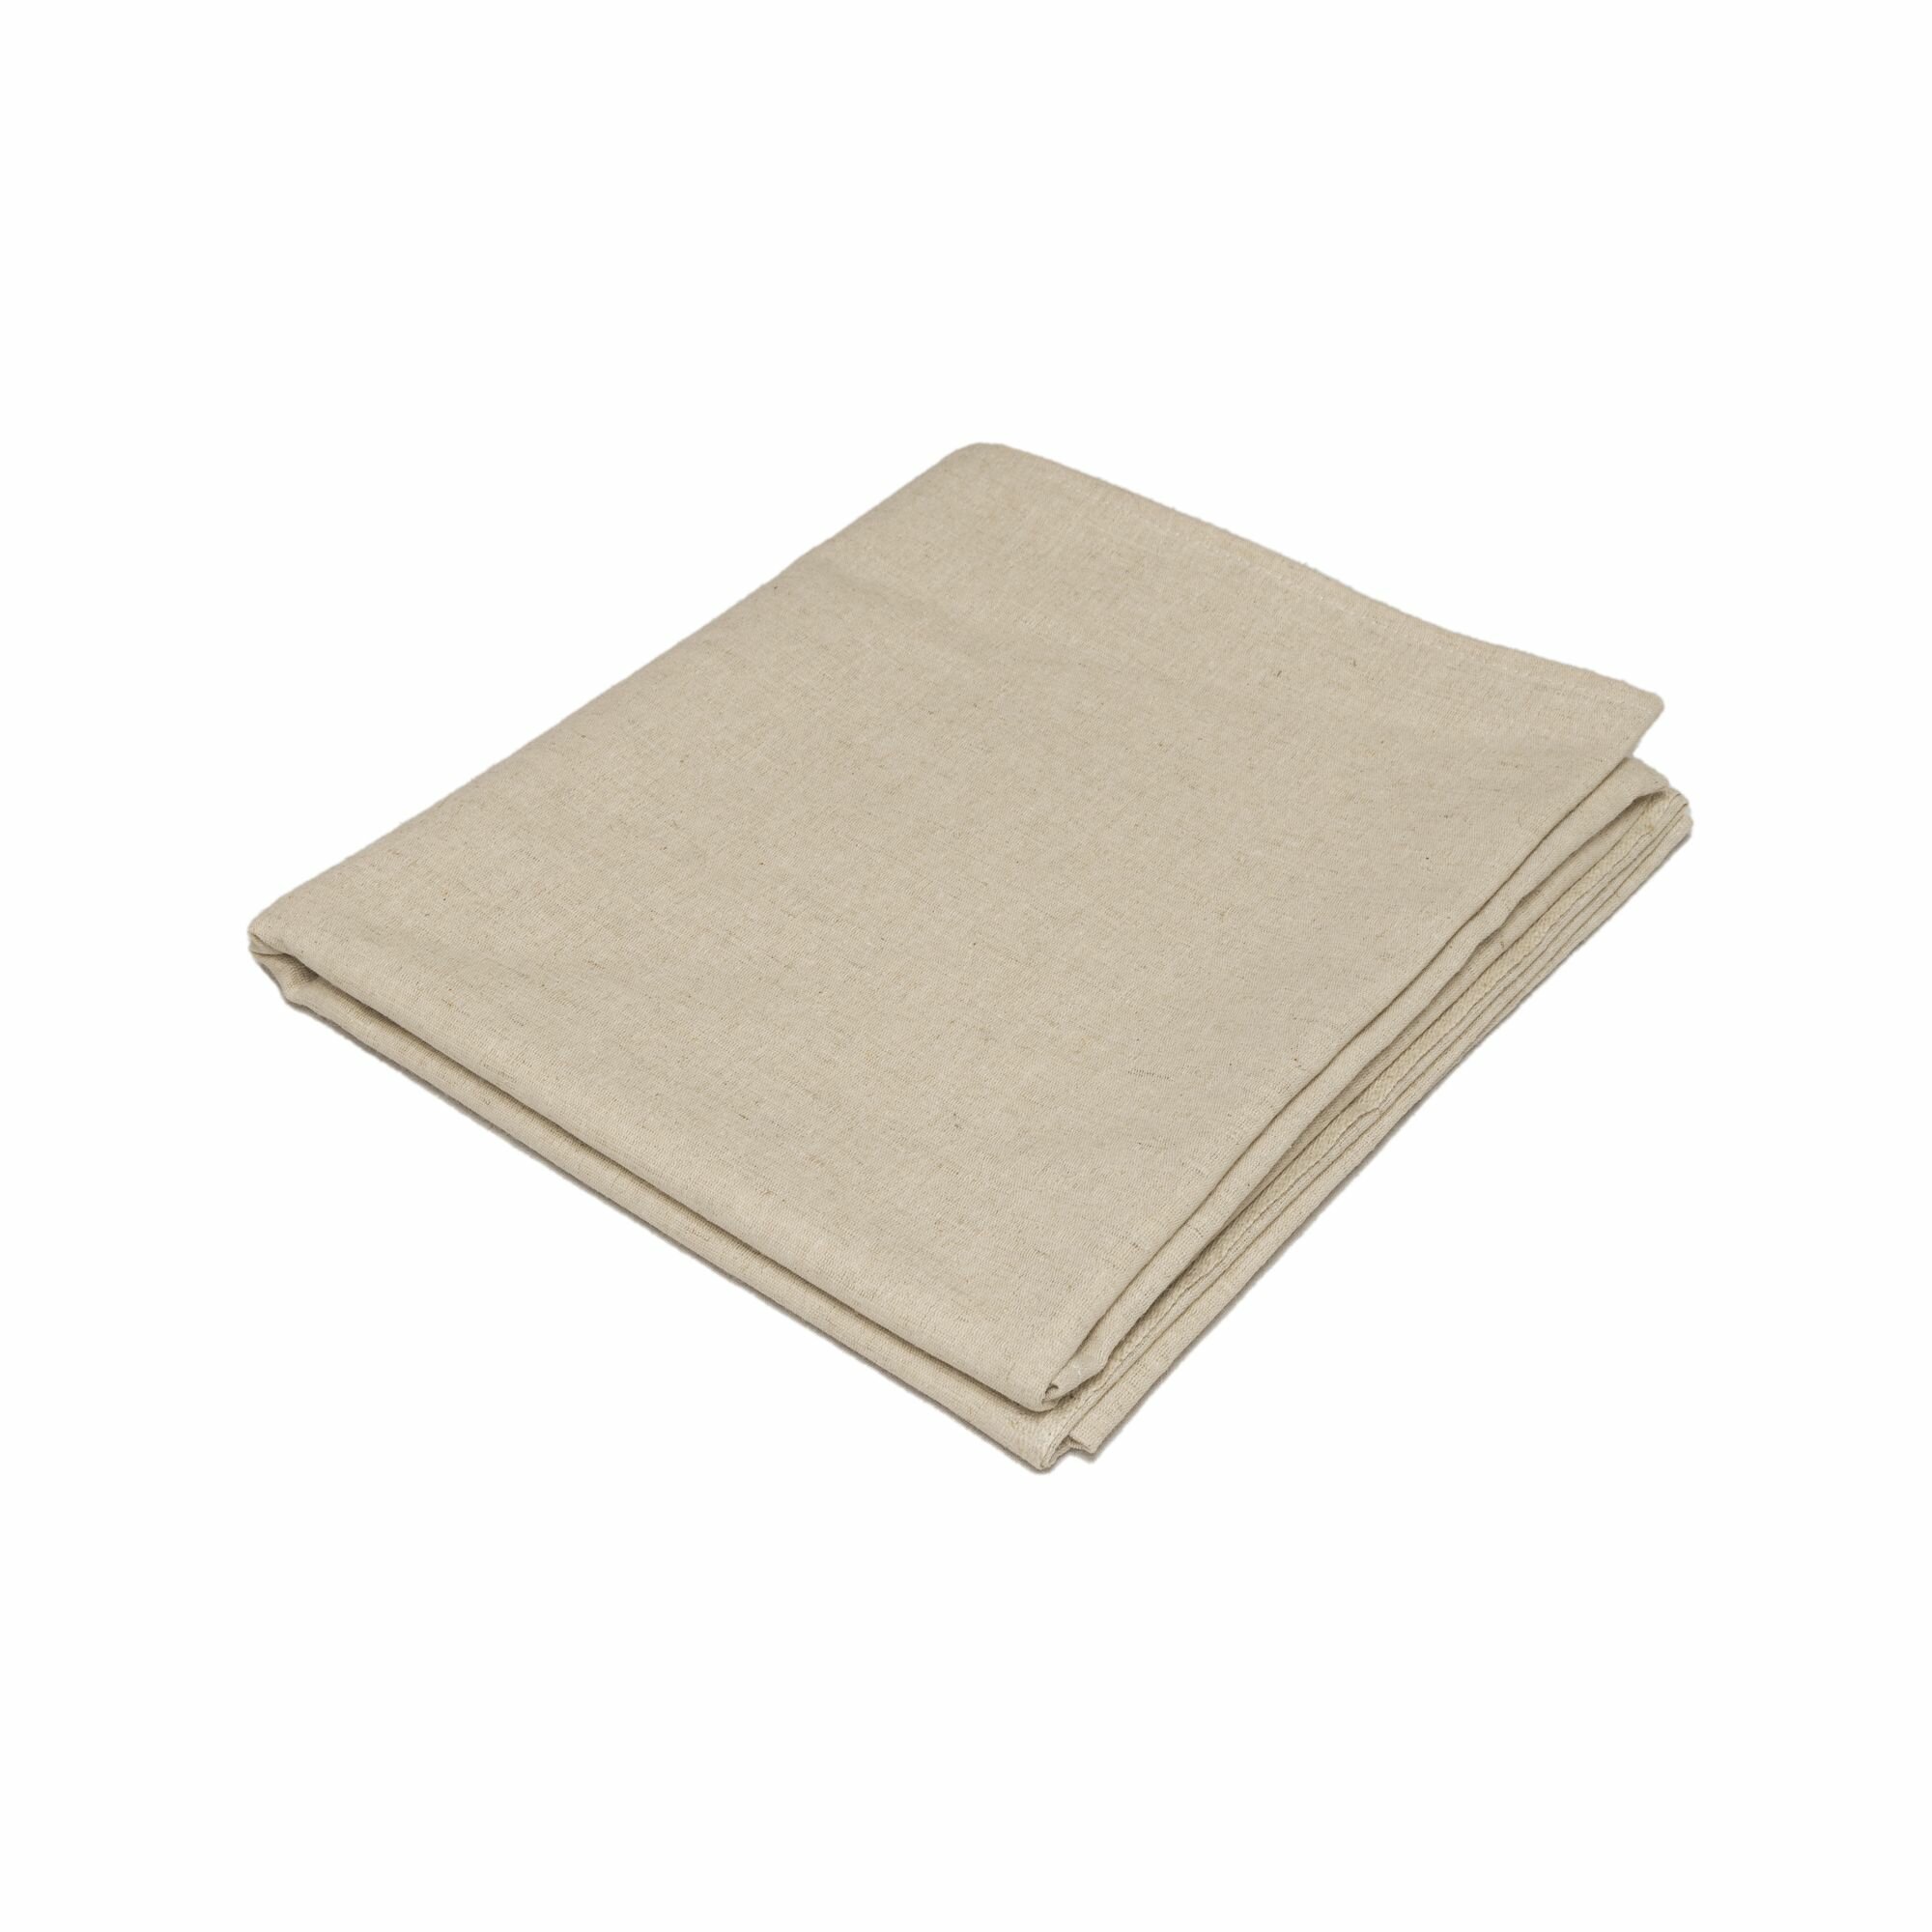 Банное льняное полотенце SPA эффект 90Х150 см без рисунка в подарочной упаковке